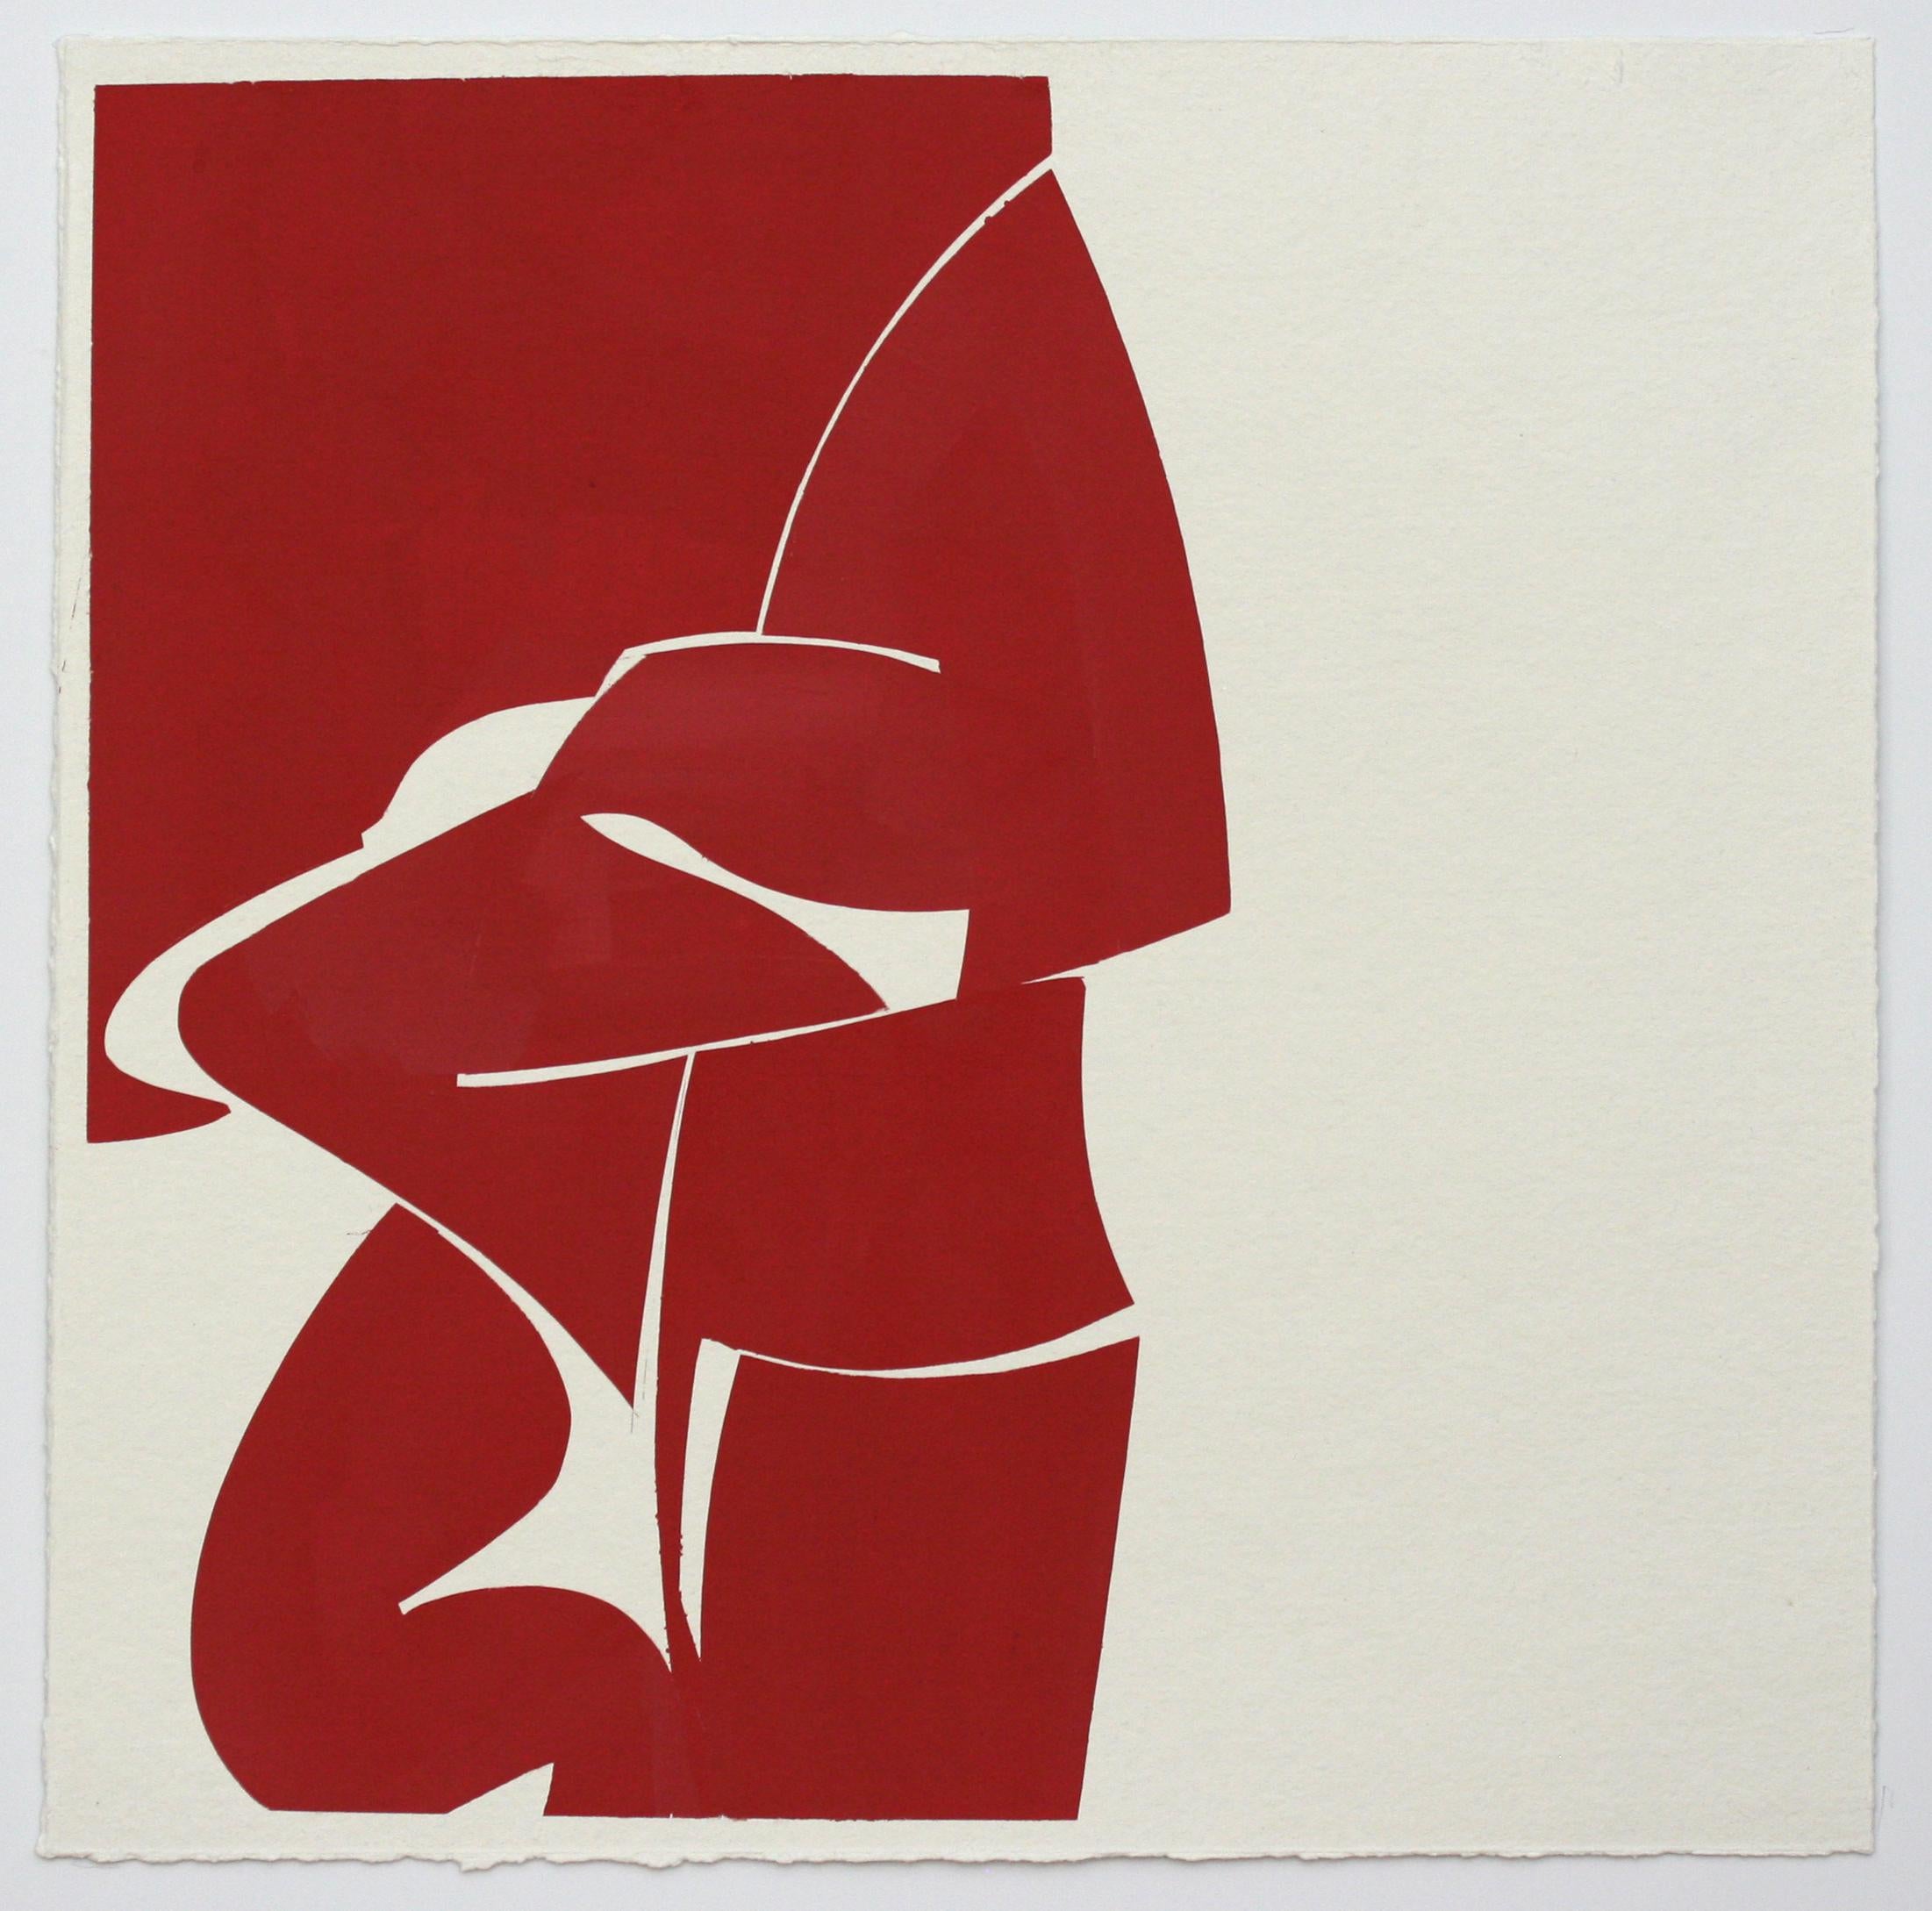 Dieses abstrakte rote Gouache-Gemälde von Joanne Freeman ist weiß gerahmt und ein Beispiel für Freemans geometrische Sensibilität. 

RAHMEN INKLUSIVE

Die Gemälde der abstrakten Malerin Joanne Freeman basieren auf Architektur:: Design:: Popkultur